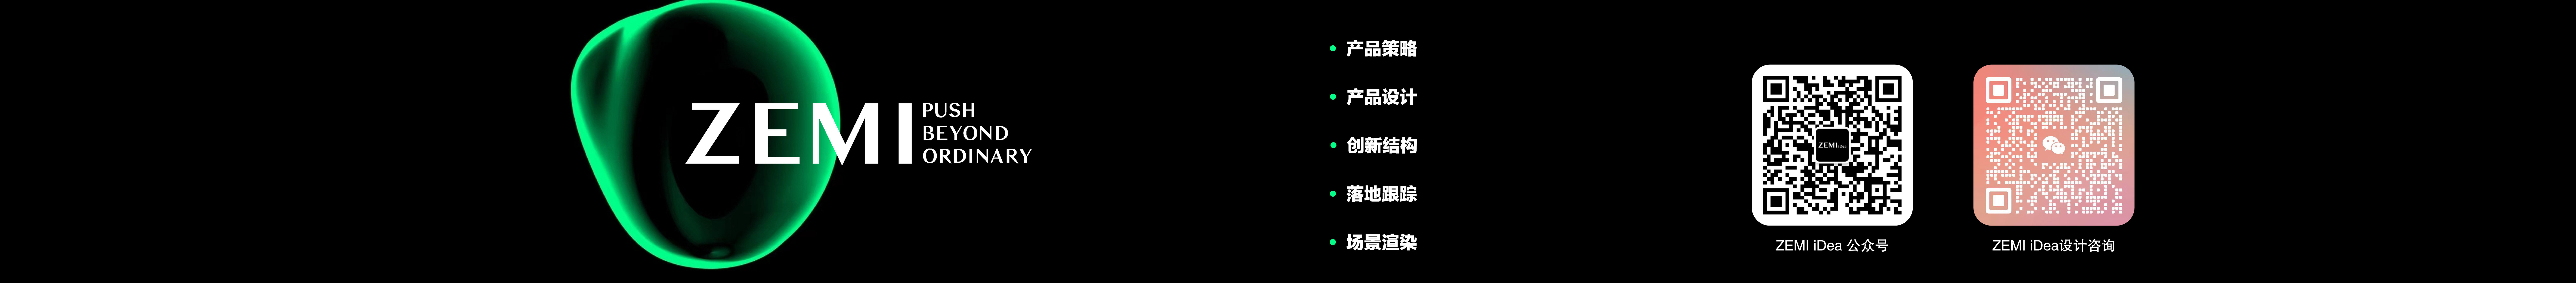 Profil-Banner von honfer zhang